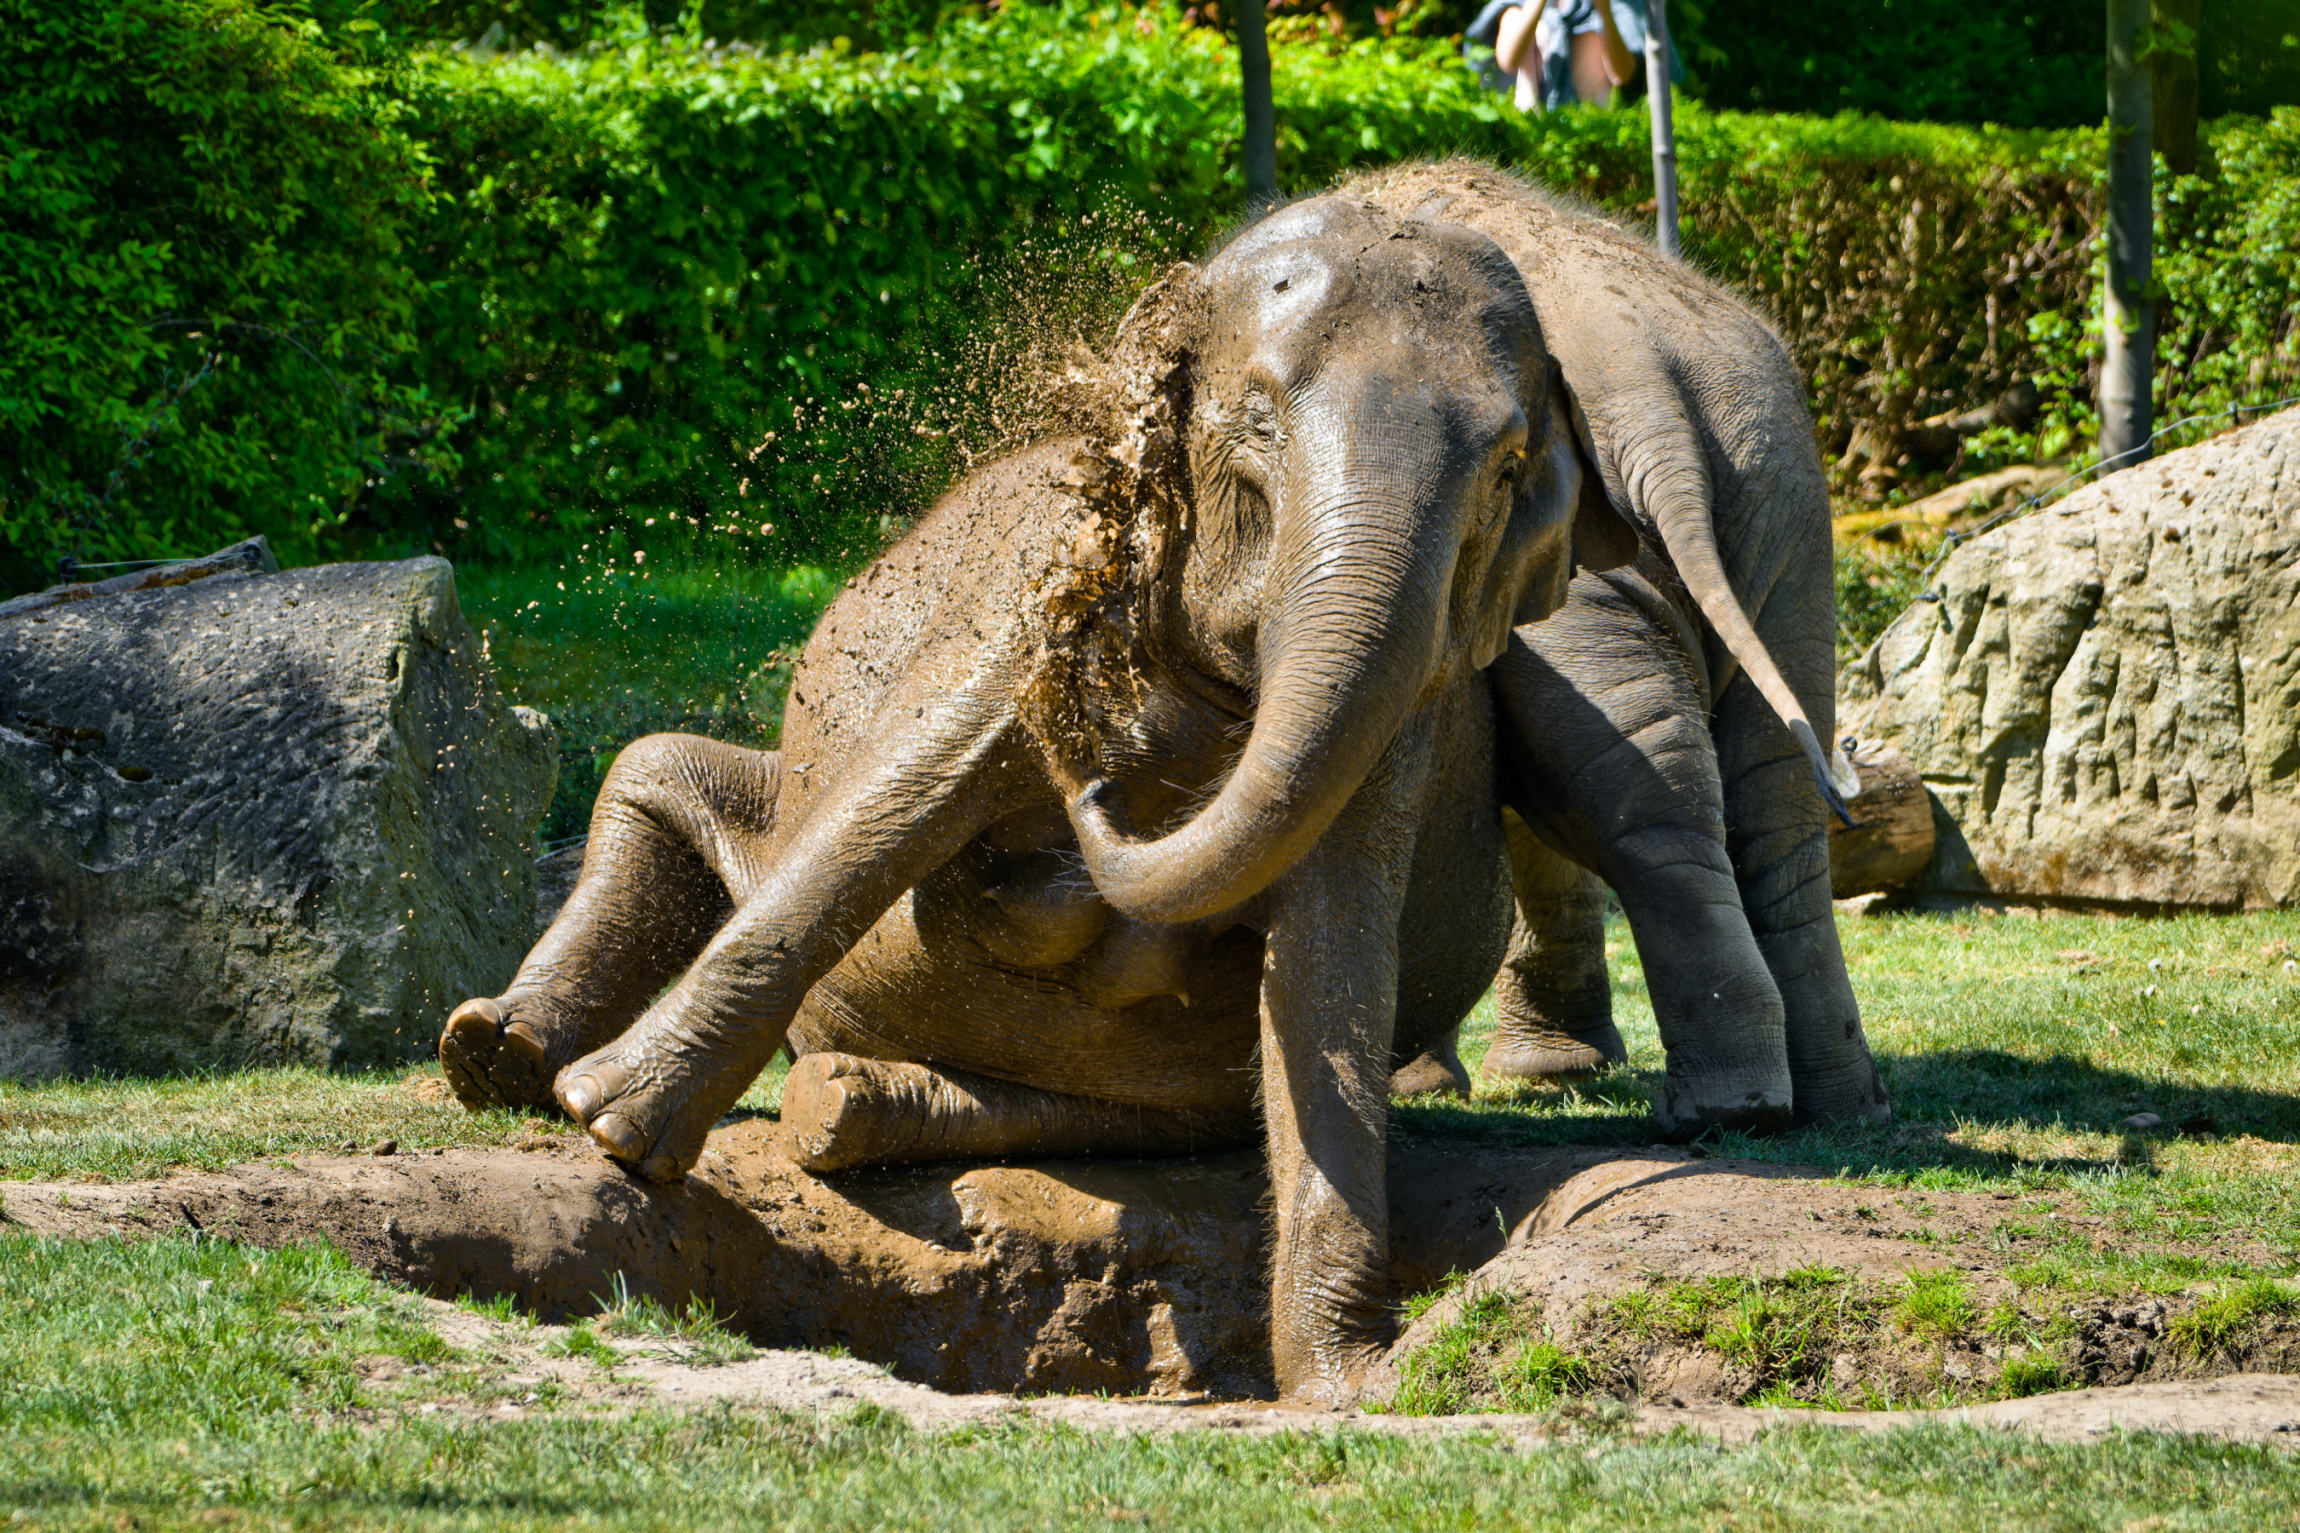 Slonice Tamara (vlevo v popředí) a Lakuna (vpravo v pozadí) si užívají bahenní lázeň v travnatém výběhu Údolí slonů, kde je možné samičí stádo zastihnout v dopoledních hodinách. Sloni indičtí díky těmto koupelím pečují o svou kůži, kterou tak chrání před sluncem, hmyzem, zvlhčují ji a současně se celkově ochlazují – na většině těla totiž slonům chybí potní žlázy. Foto Petr Hamerník, Zoo Praha